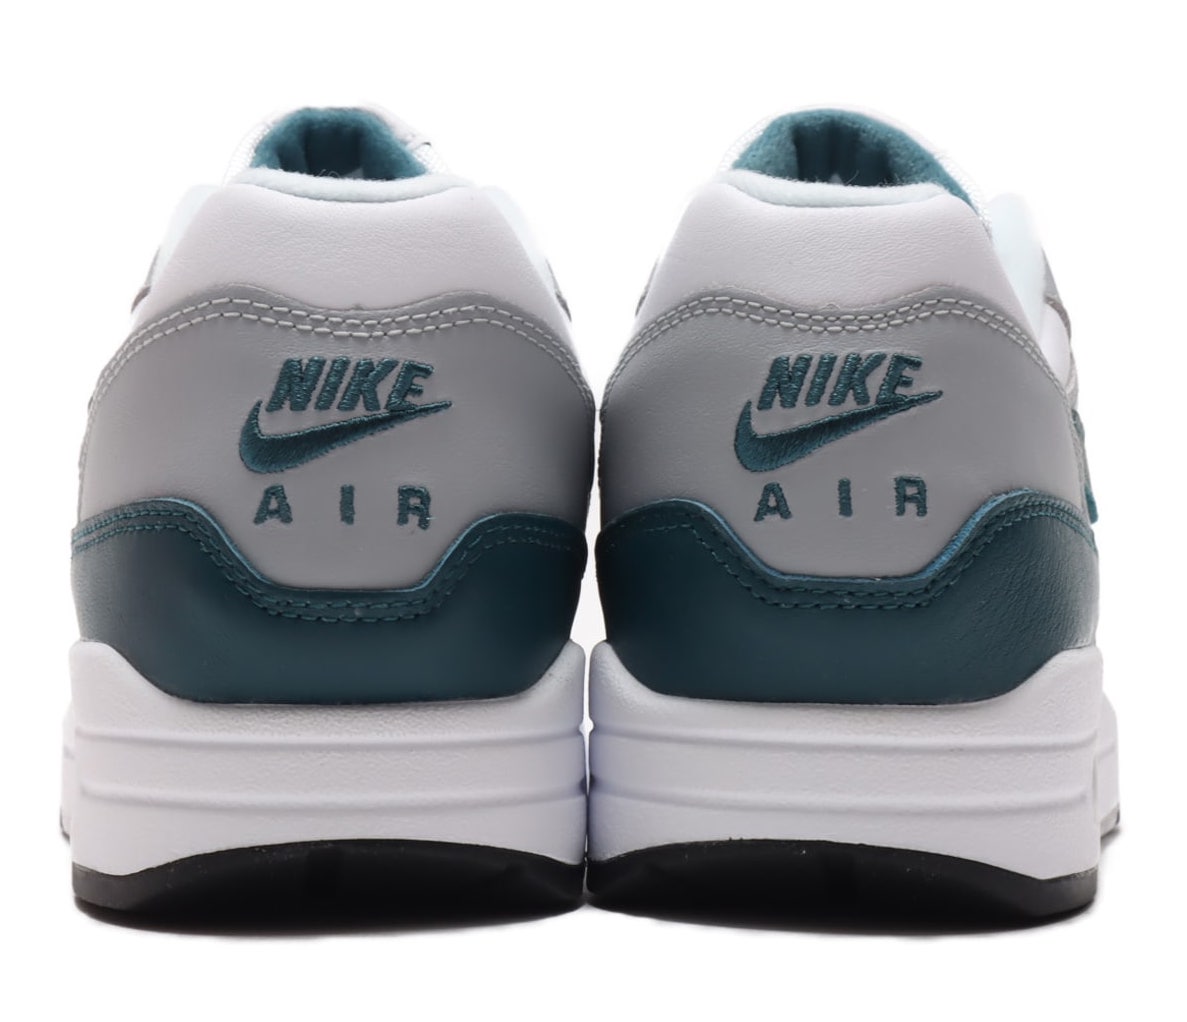 Nike Air Max 1 Dark Teal Green DH4059-101 Release Date